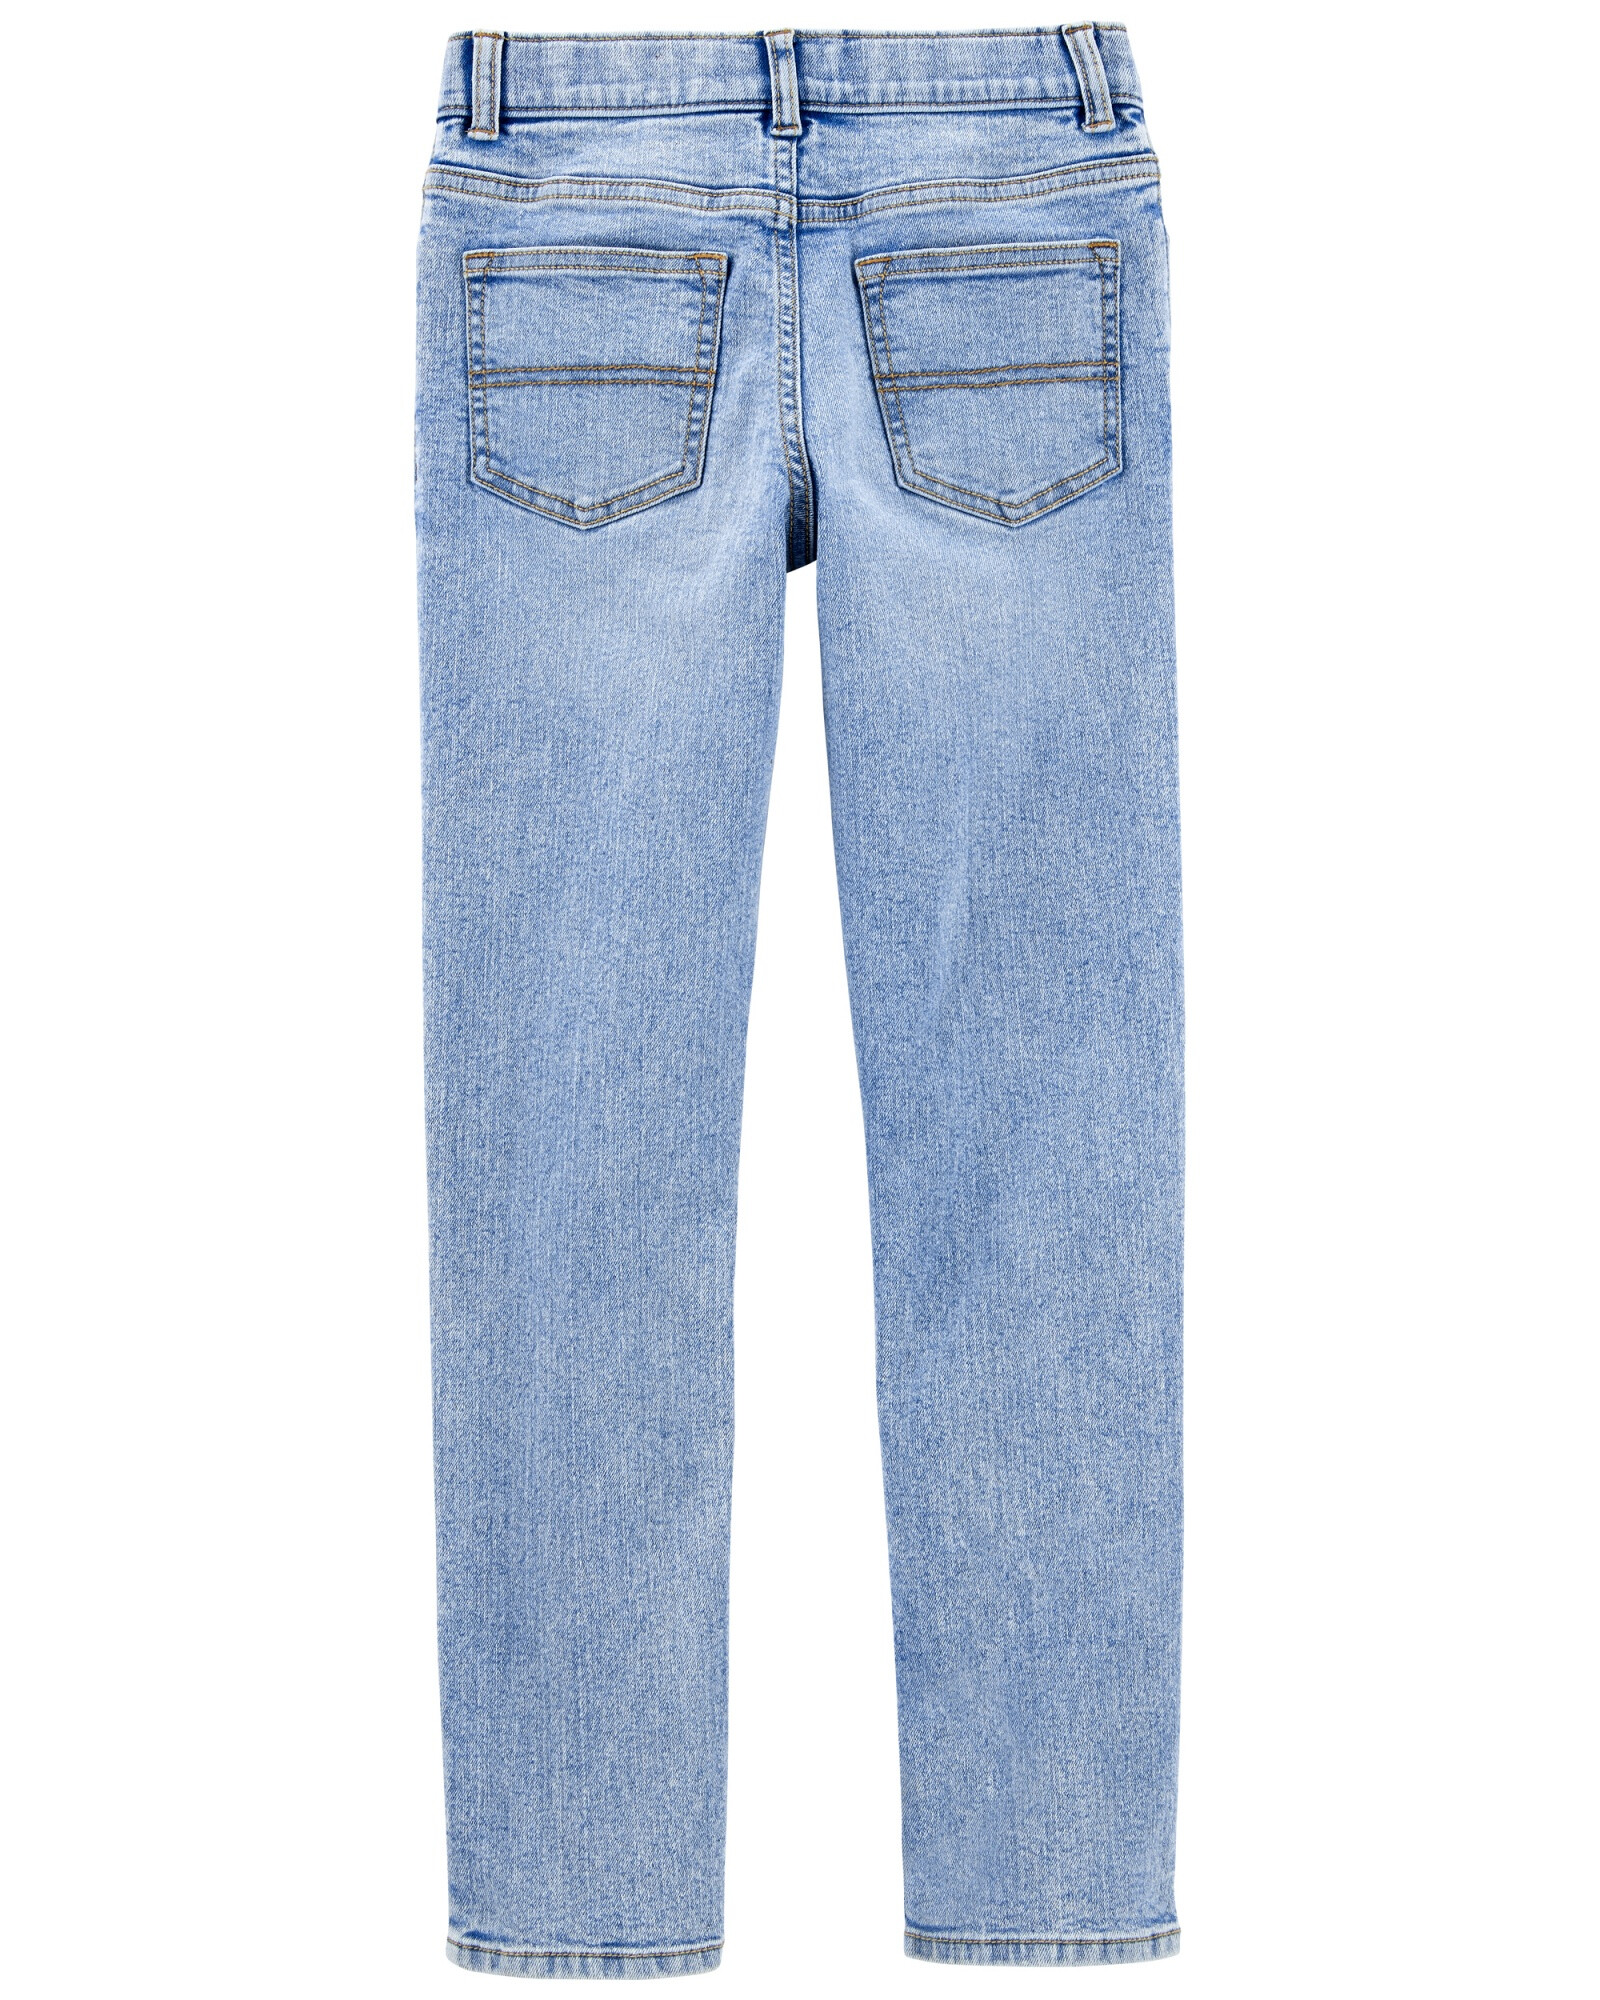 Pantalón de jean ajustado extra largo. Talles 6-14 Sin color